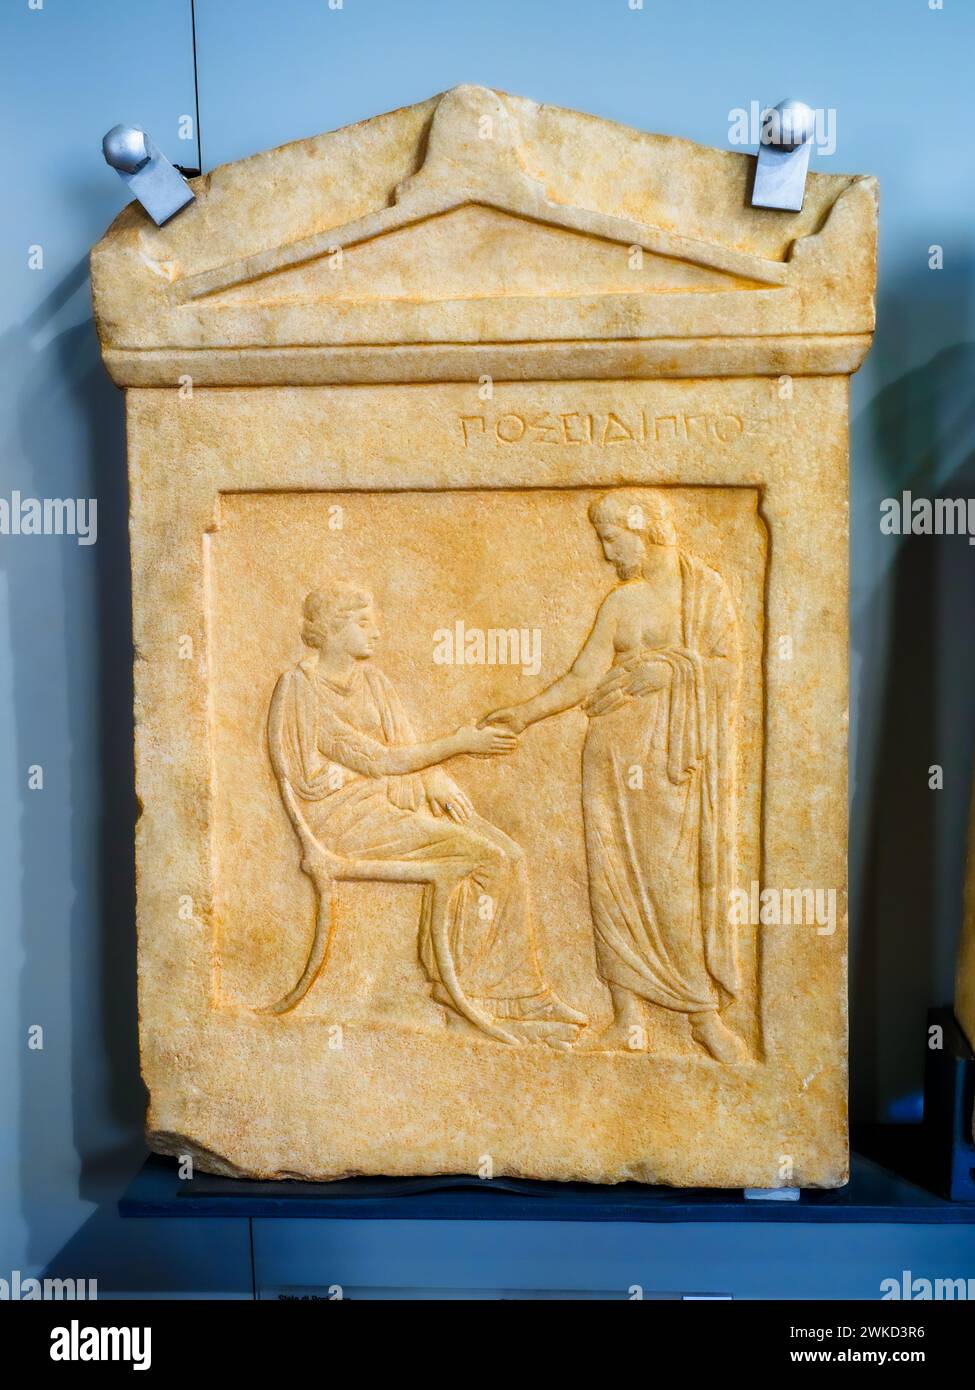 Stele von Posidippos - attisches Original aus dem späten 5. Oder frühen 4. Jahrhundert v. Chr., pentelismarmor aus Piräus - Museo di Scultura Antica Giovanni Barracco, Rom, Italien Stockfoto